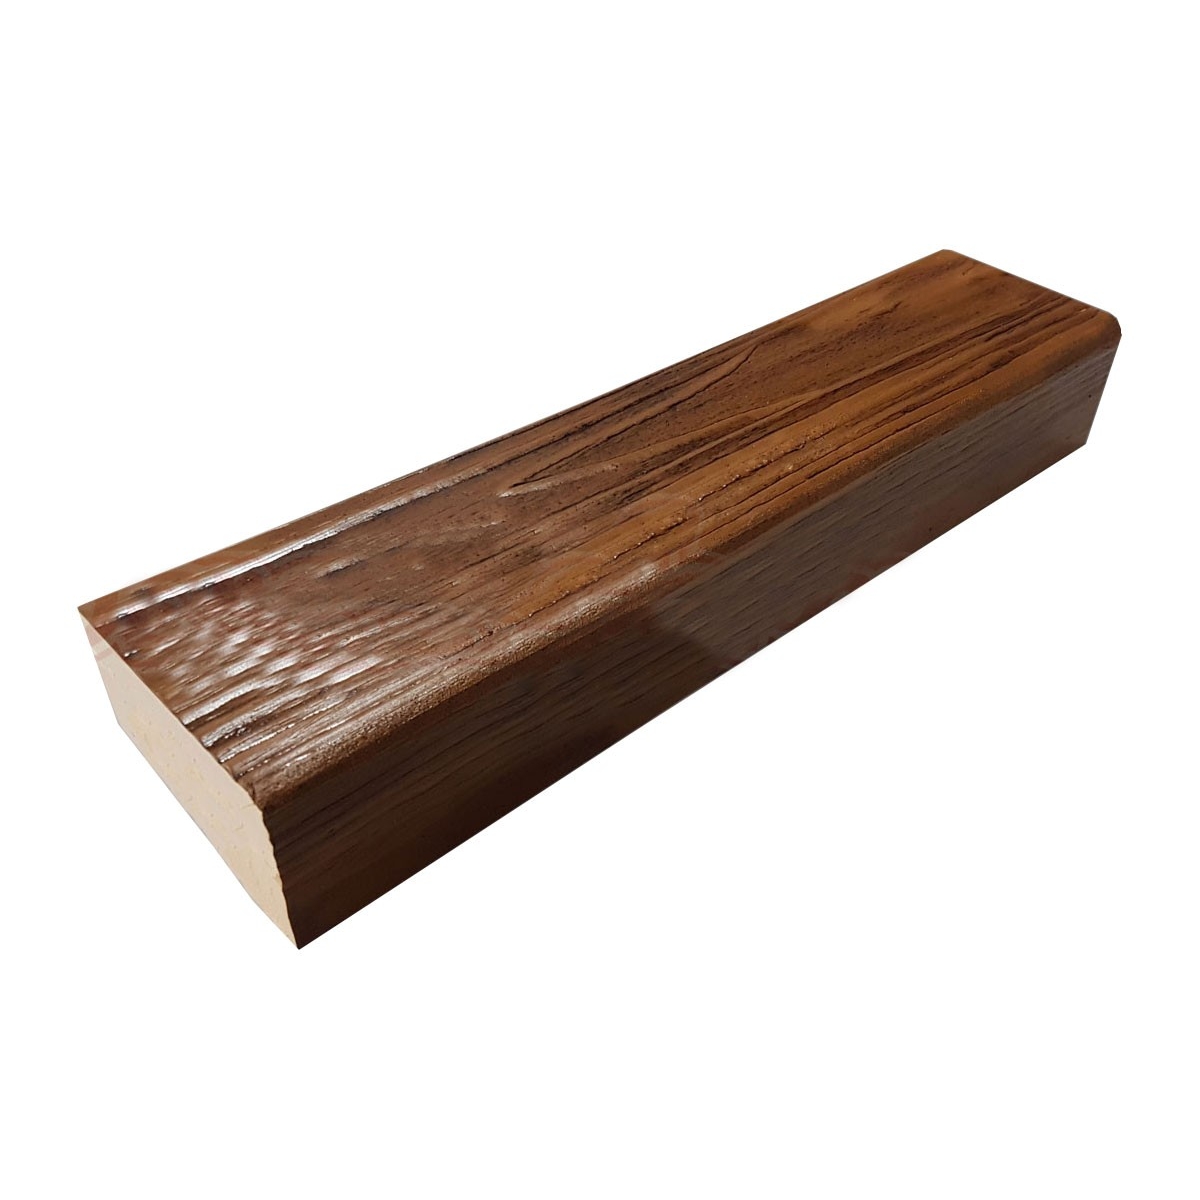 Viga imitación a madera fabricada en poliestireno extruido de 15x3x260